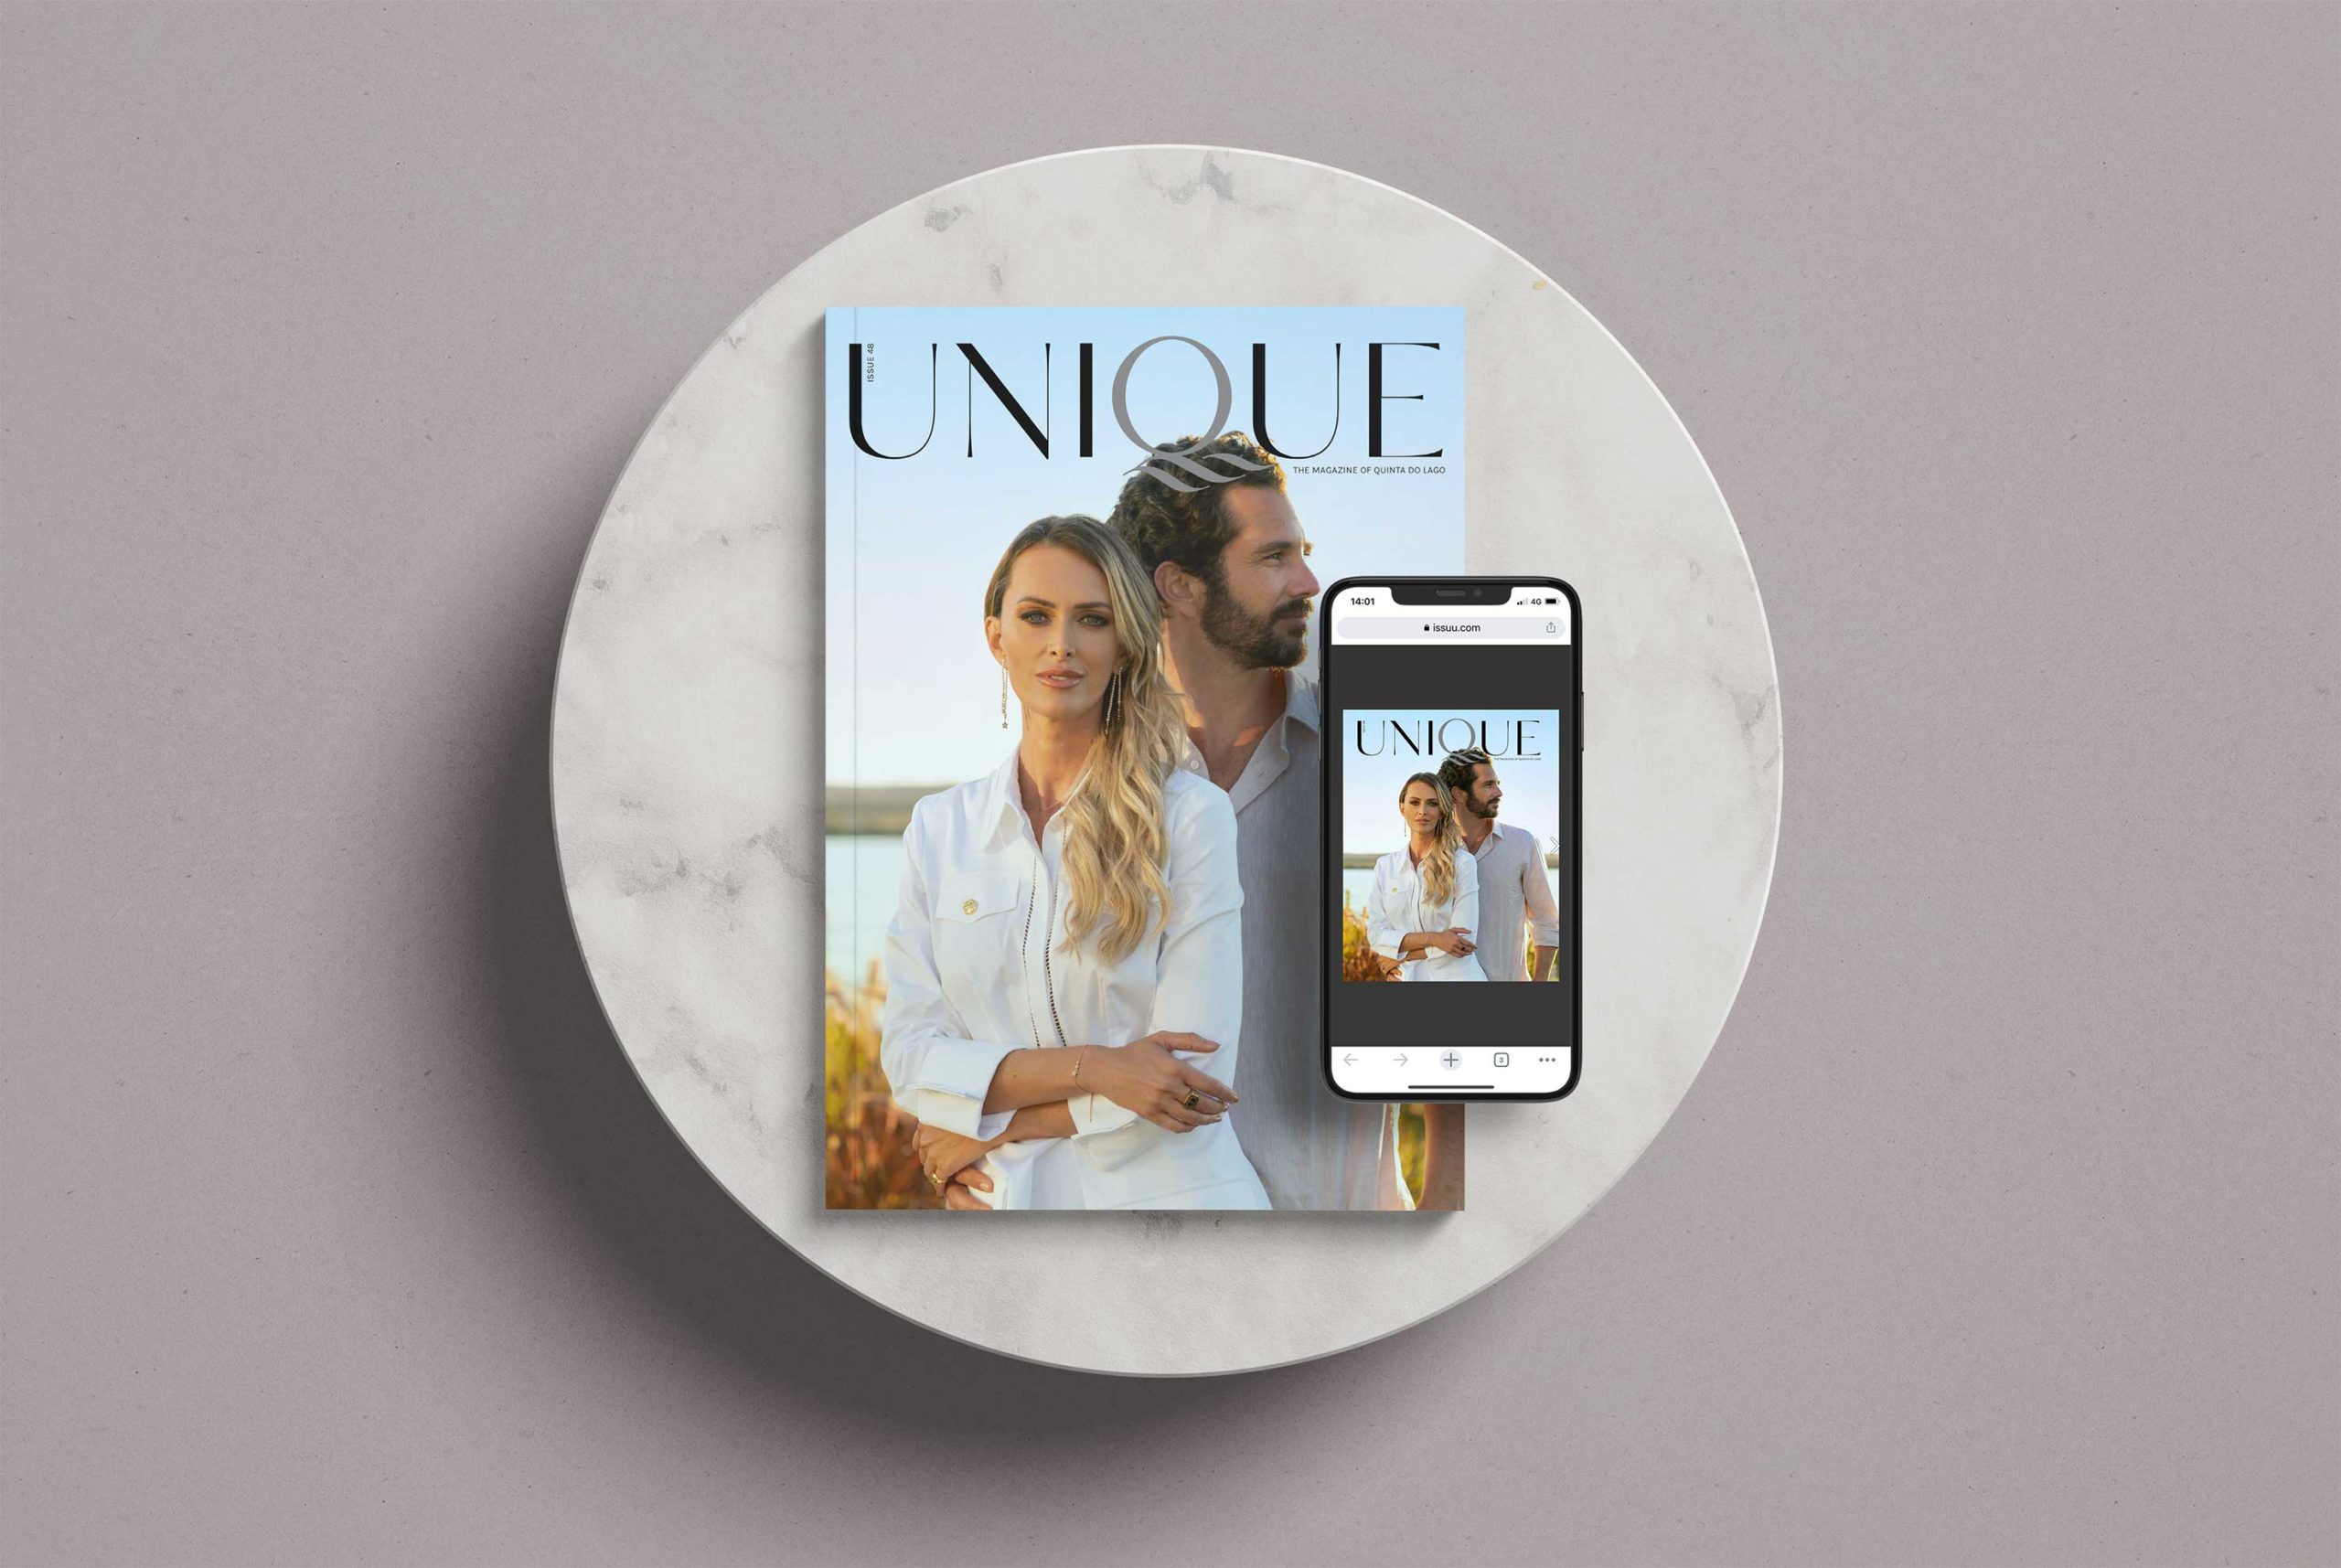 Unique Magazine - Cover image of high profile couple